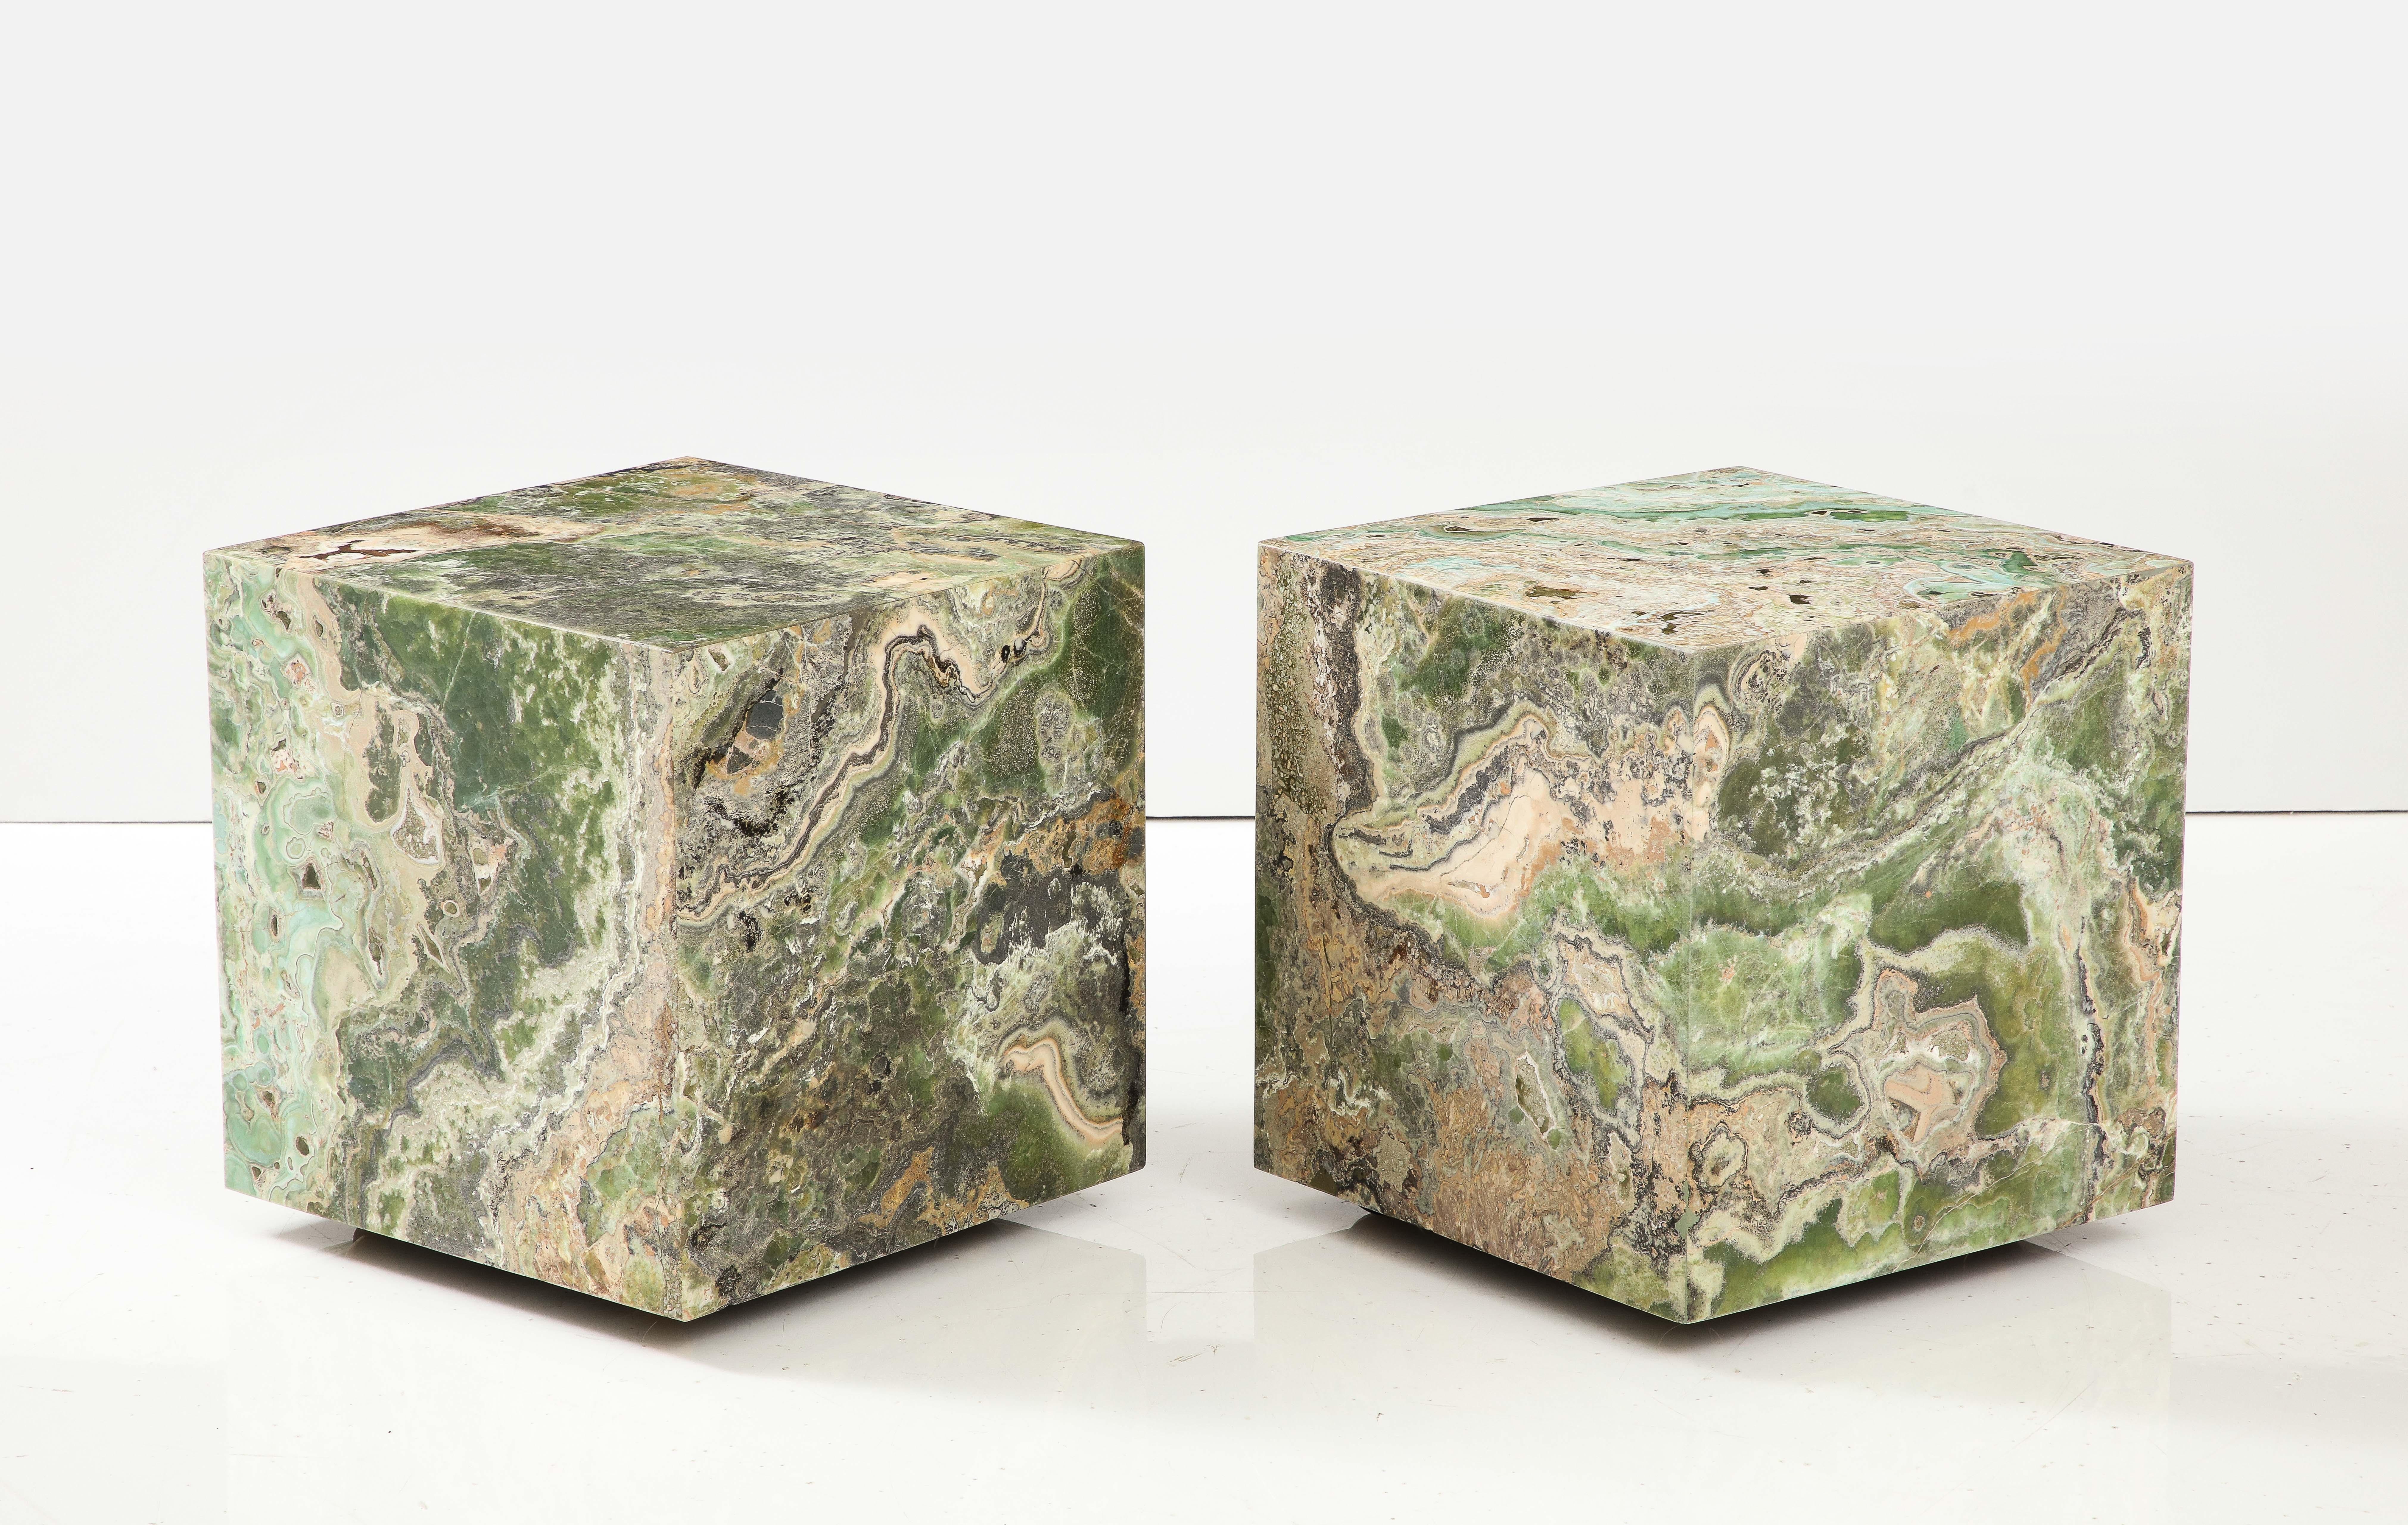 Spektakuläres Paar Custom Onyx Cubes mit geschliffener Oberfläche.
Die matte Oberfläche der Würfel / Beistelltische verleiht ihnen ein wunderbar natürliches Aussehen.
Sie stehen auf Messingrollen, so dass sie leicht bewegt und bei Bedarf zu einem